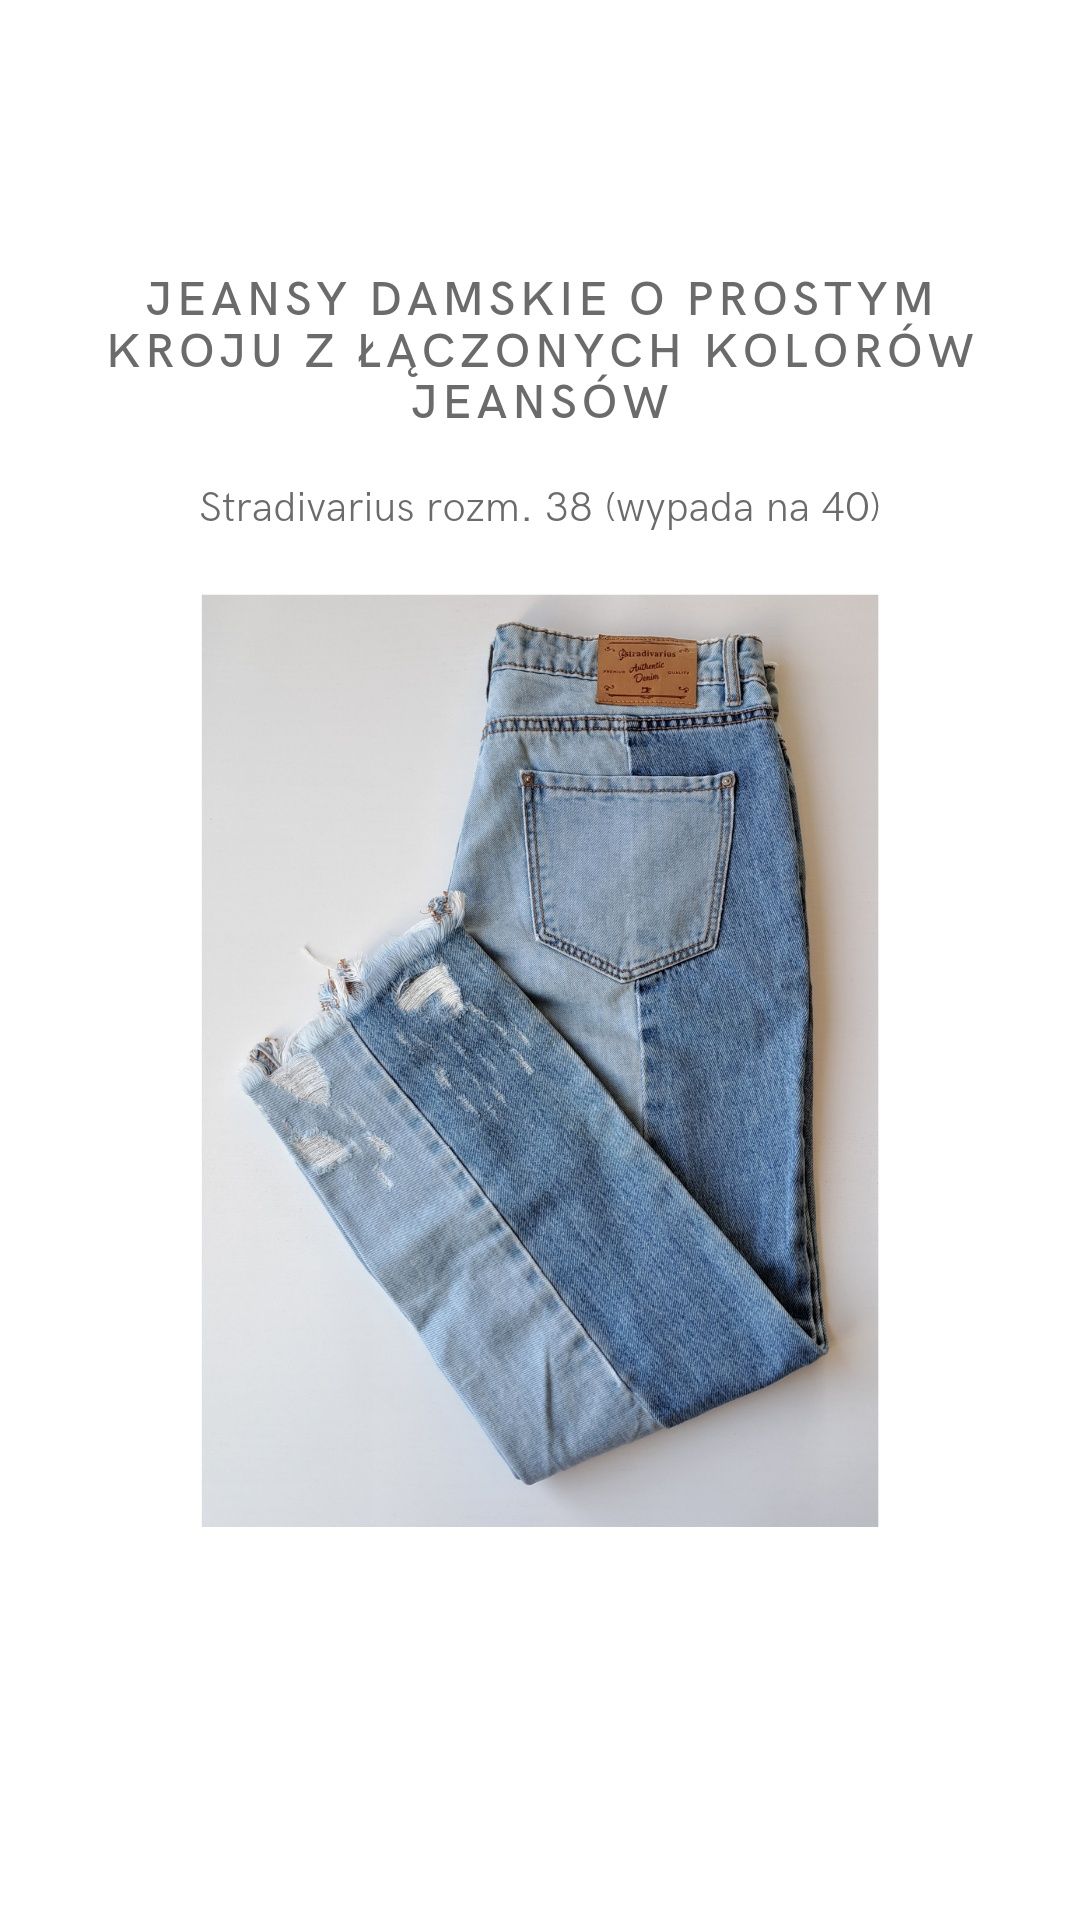 Jeansy damskie o prostym kroju z łączonych jeansów Stradivarius r. 38